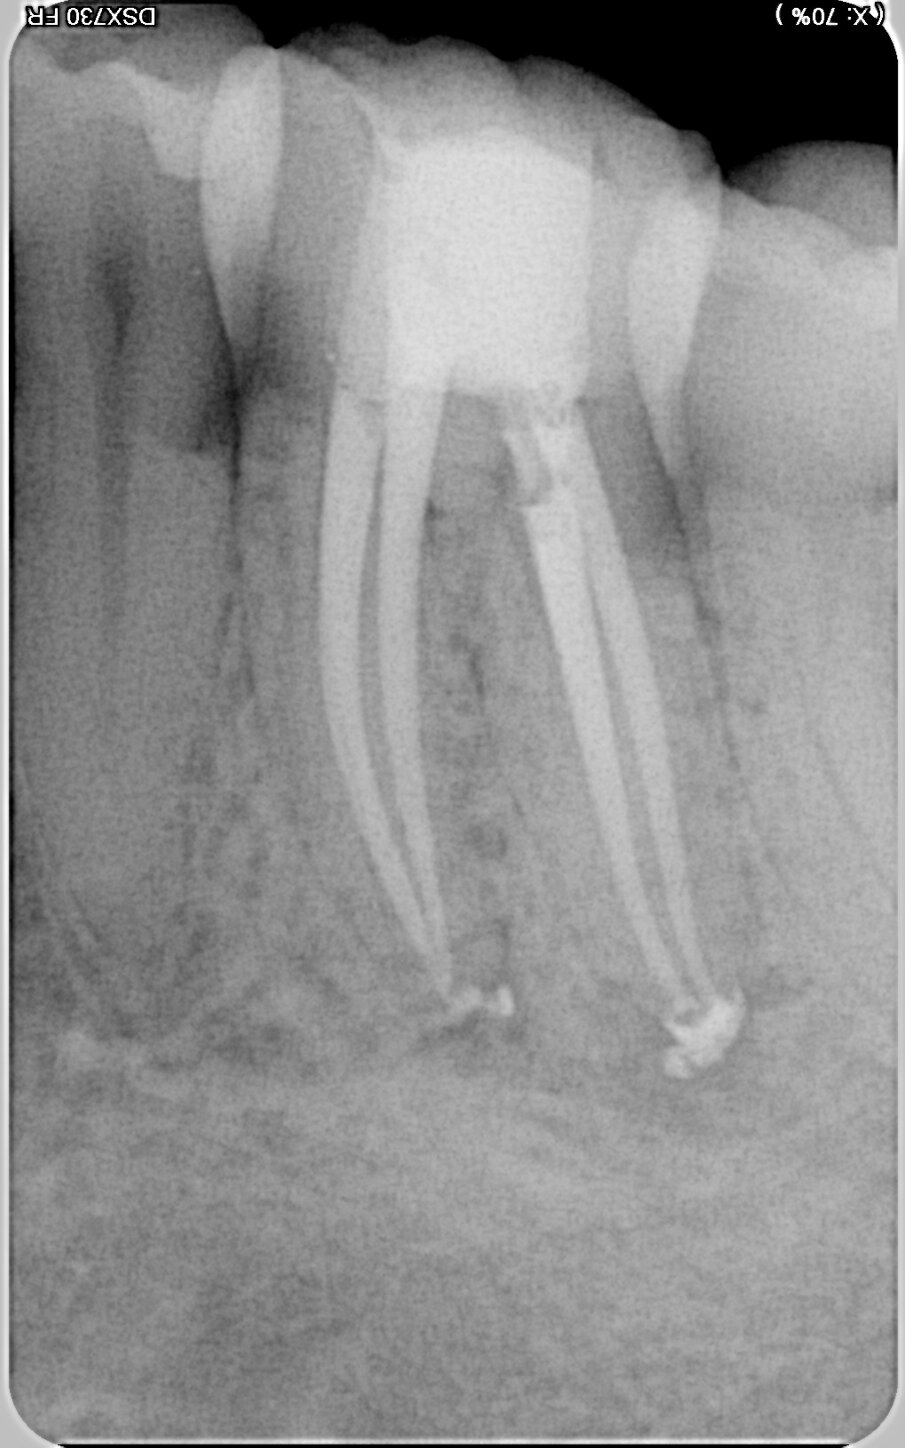 Fig. 6: Post-op radiographic images. (Image: © Dr Silviu Bondari)